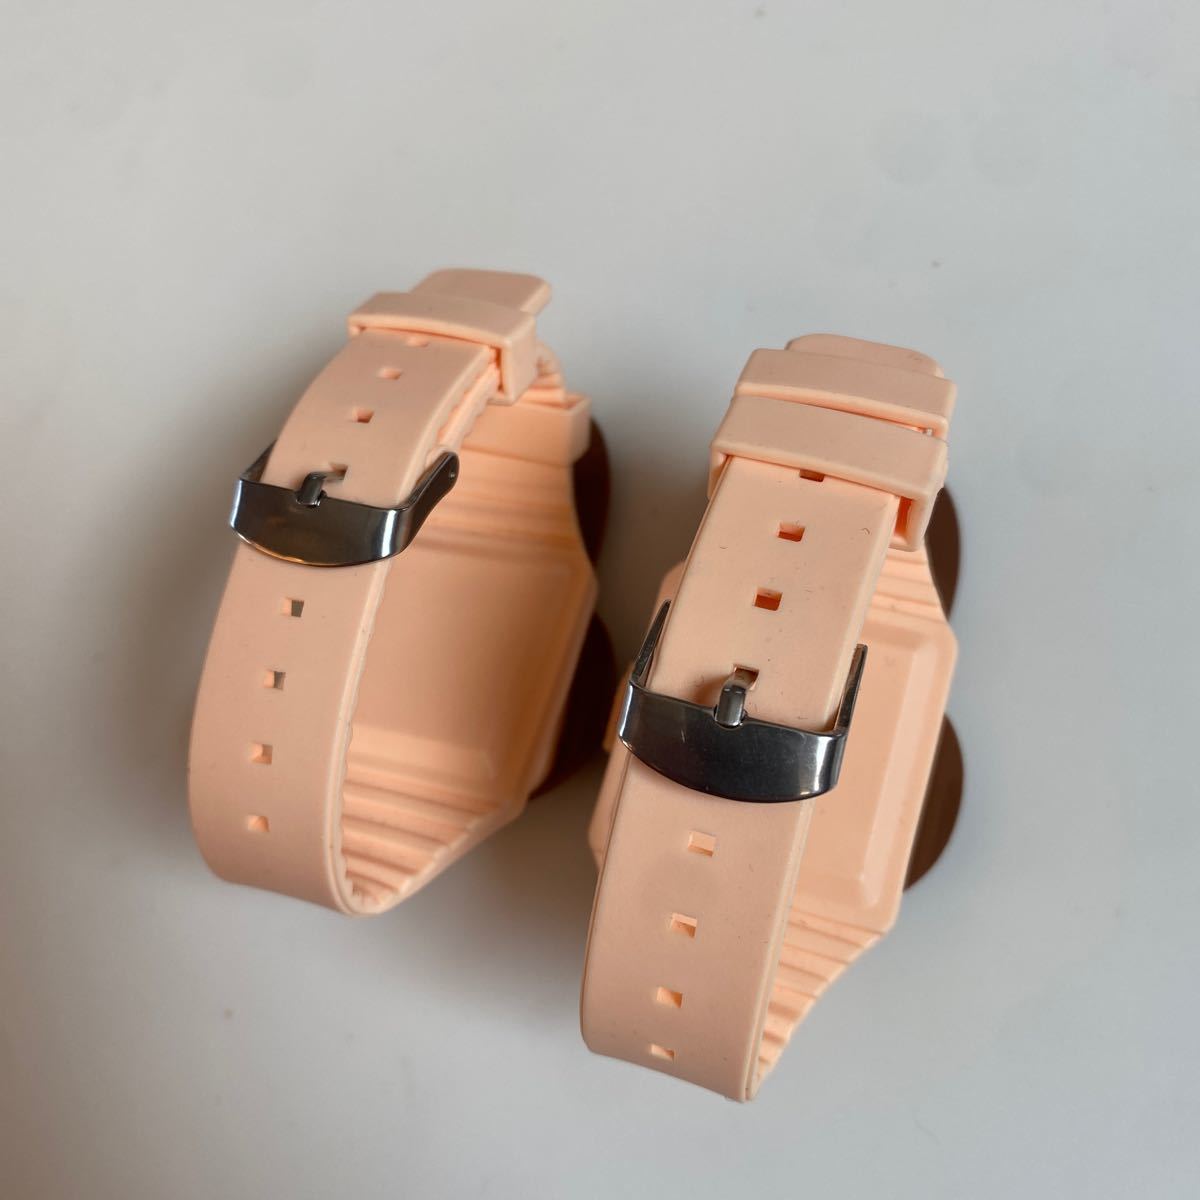  распродажа быстрое решение 1 иен 2 шт. комплект Miffy наручные часы эмблема часы mela колено совместно передвижной подтверждено 